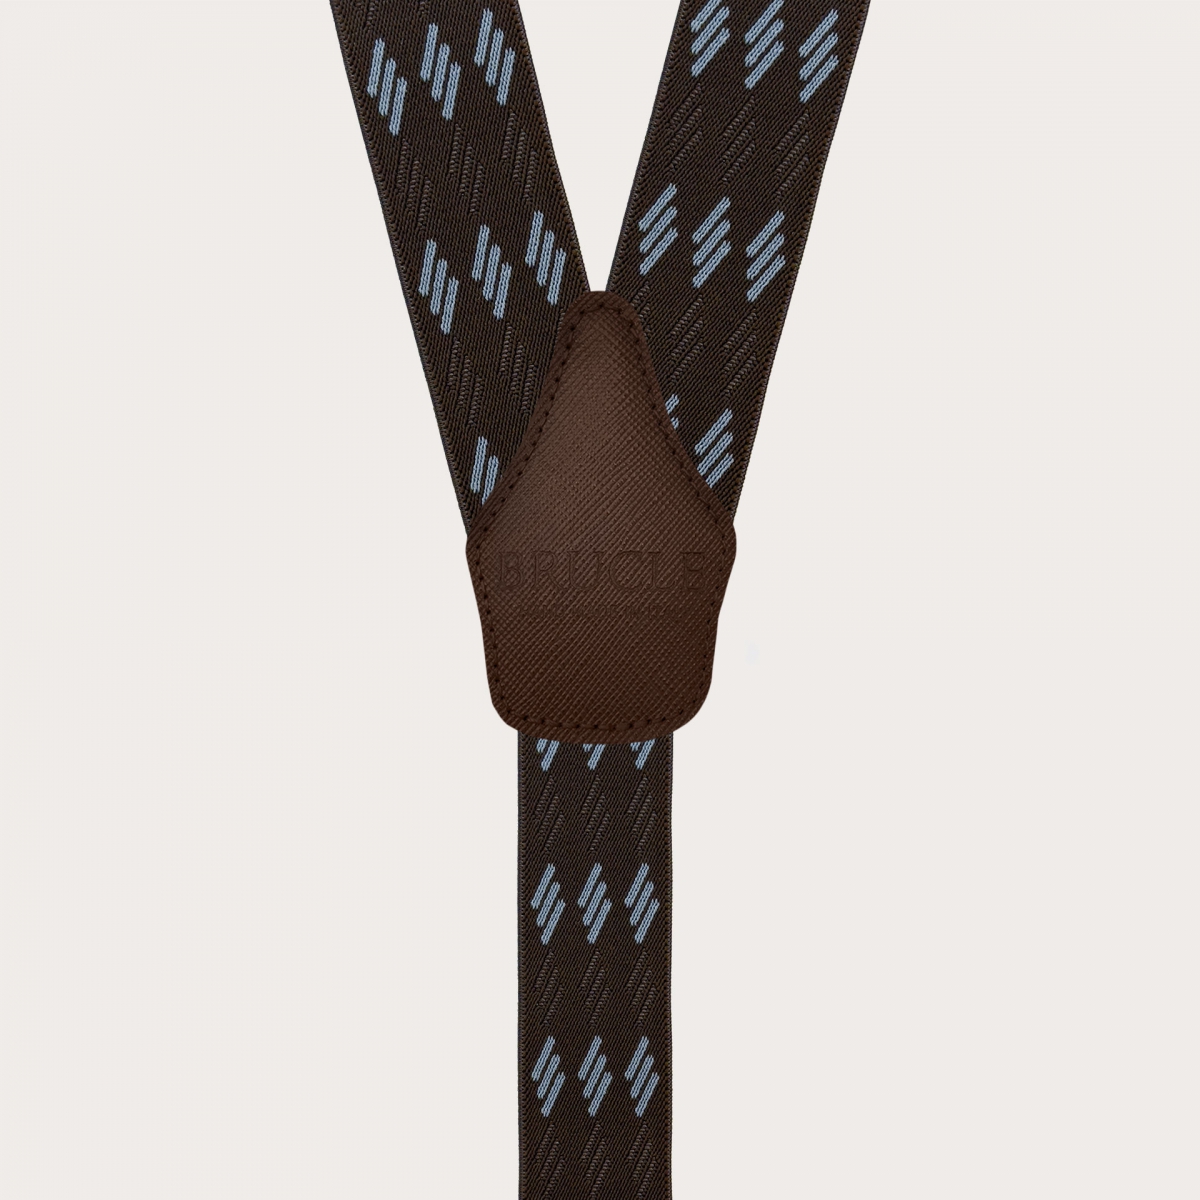 Bretelle elastiche marroni con righe azzurre per bottoni o clip